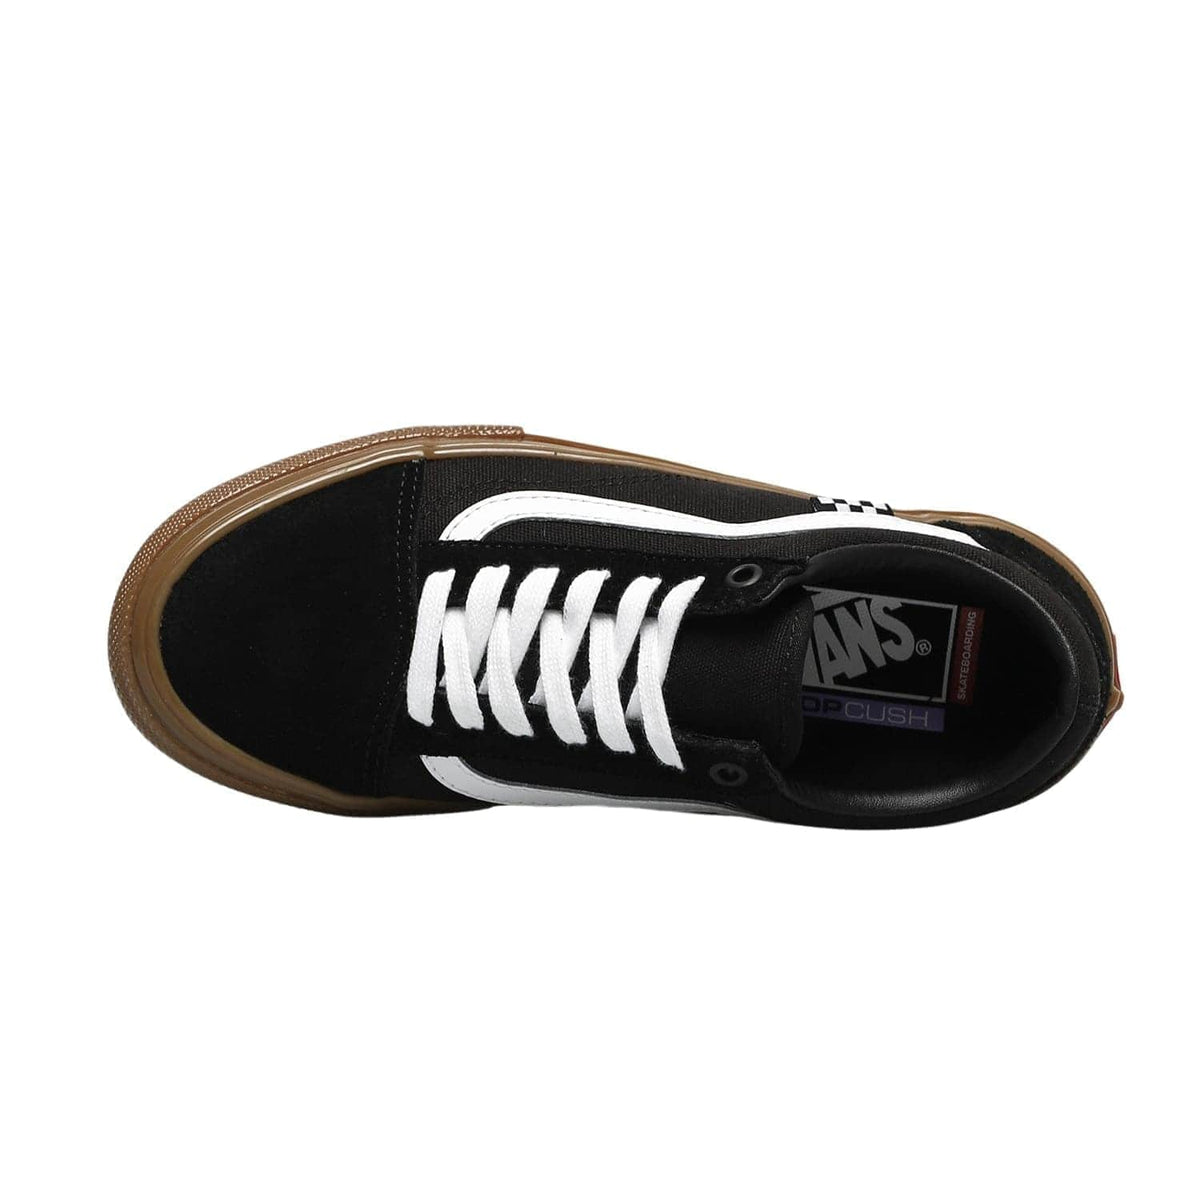 Vans Skate Old Skool Shoes - Black Gum - Mens Skate Shoes by Vans